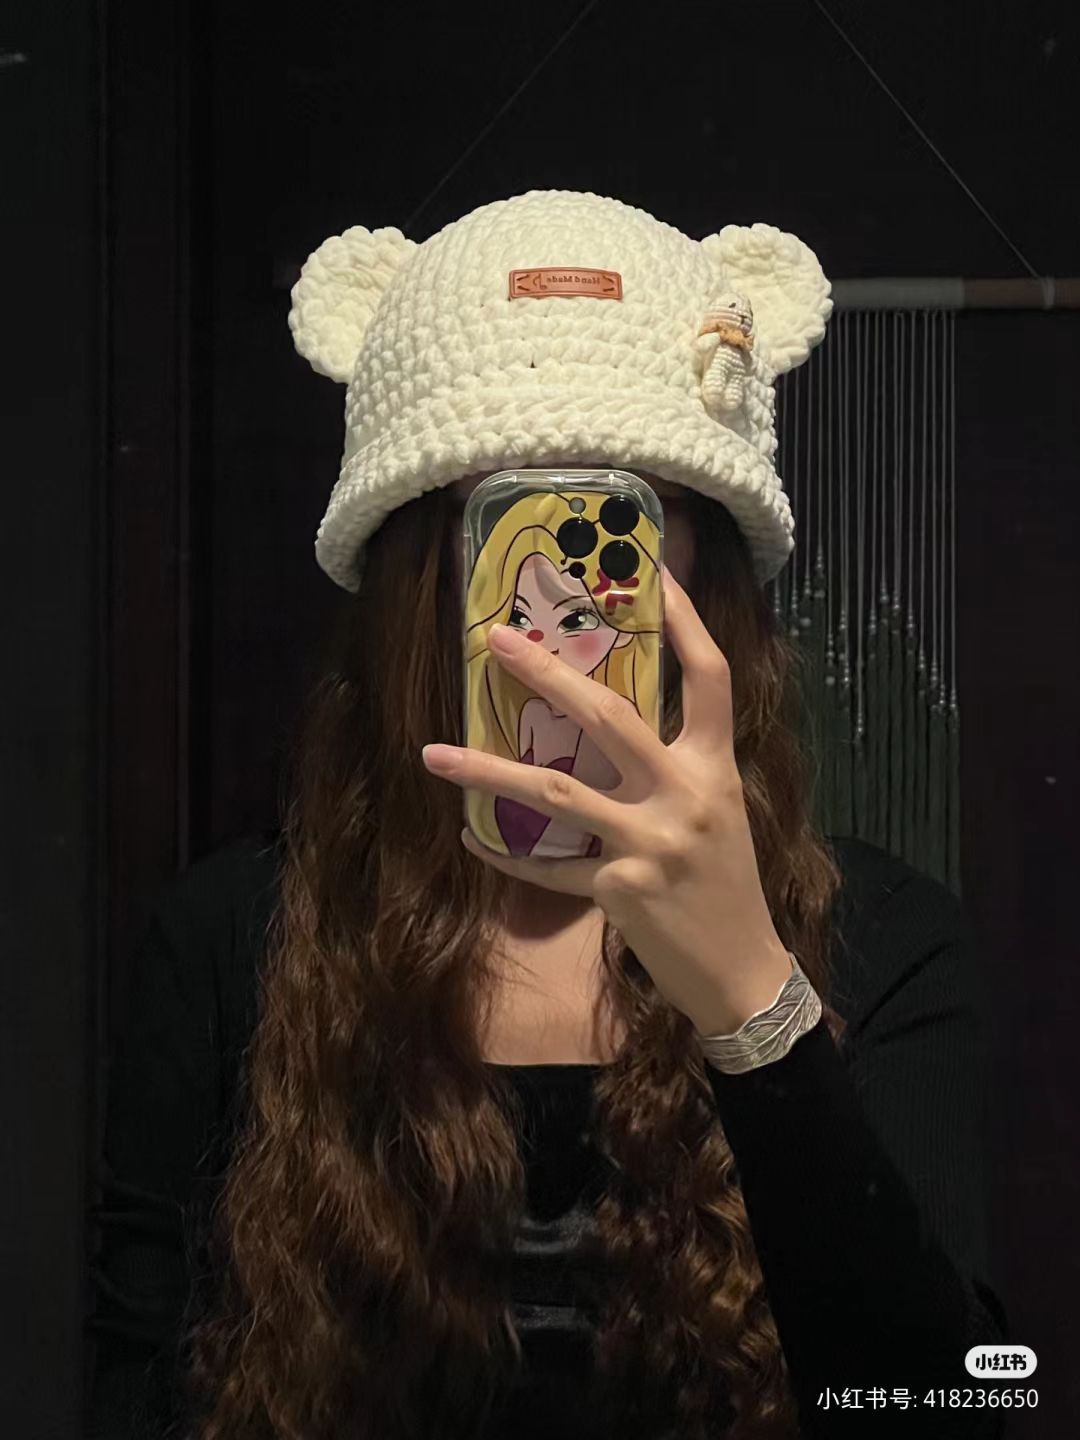 White bear hat crochet pattern